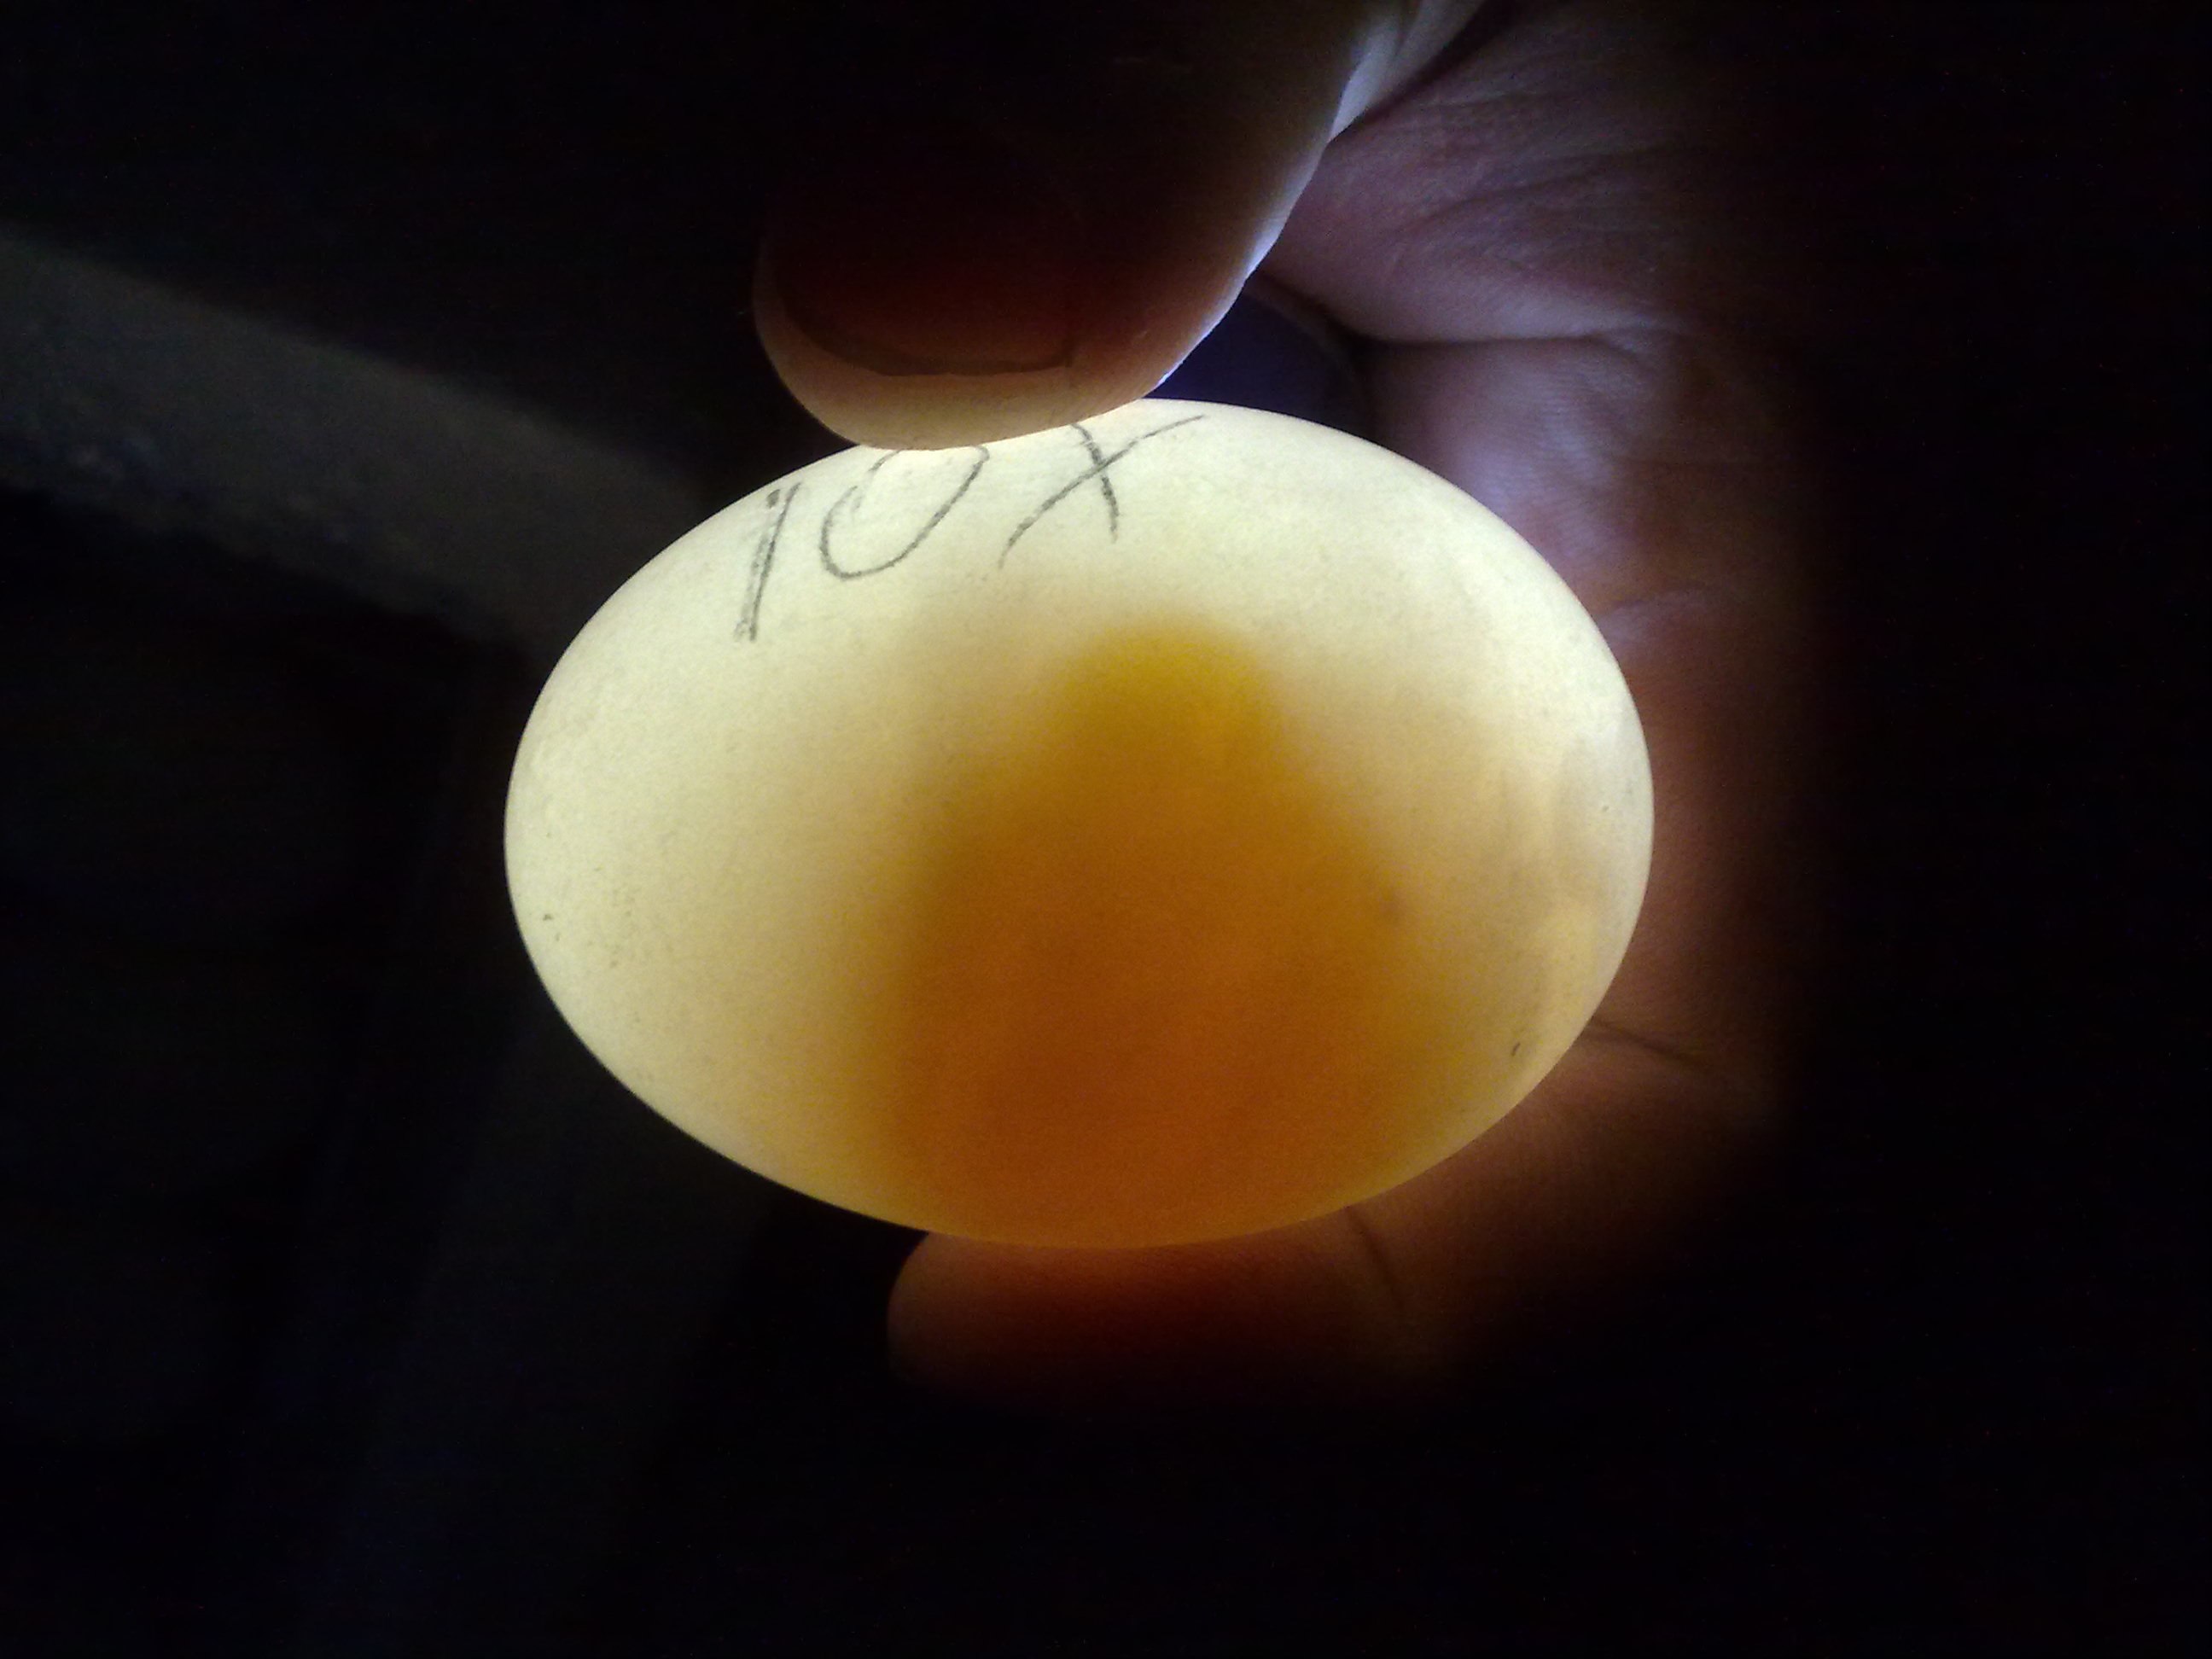 Развитие цыпленка в яйце